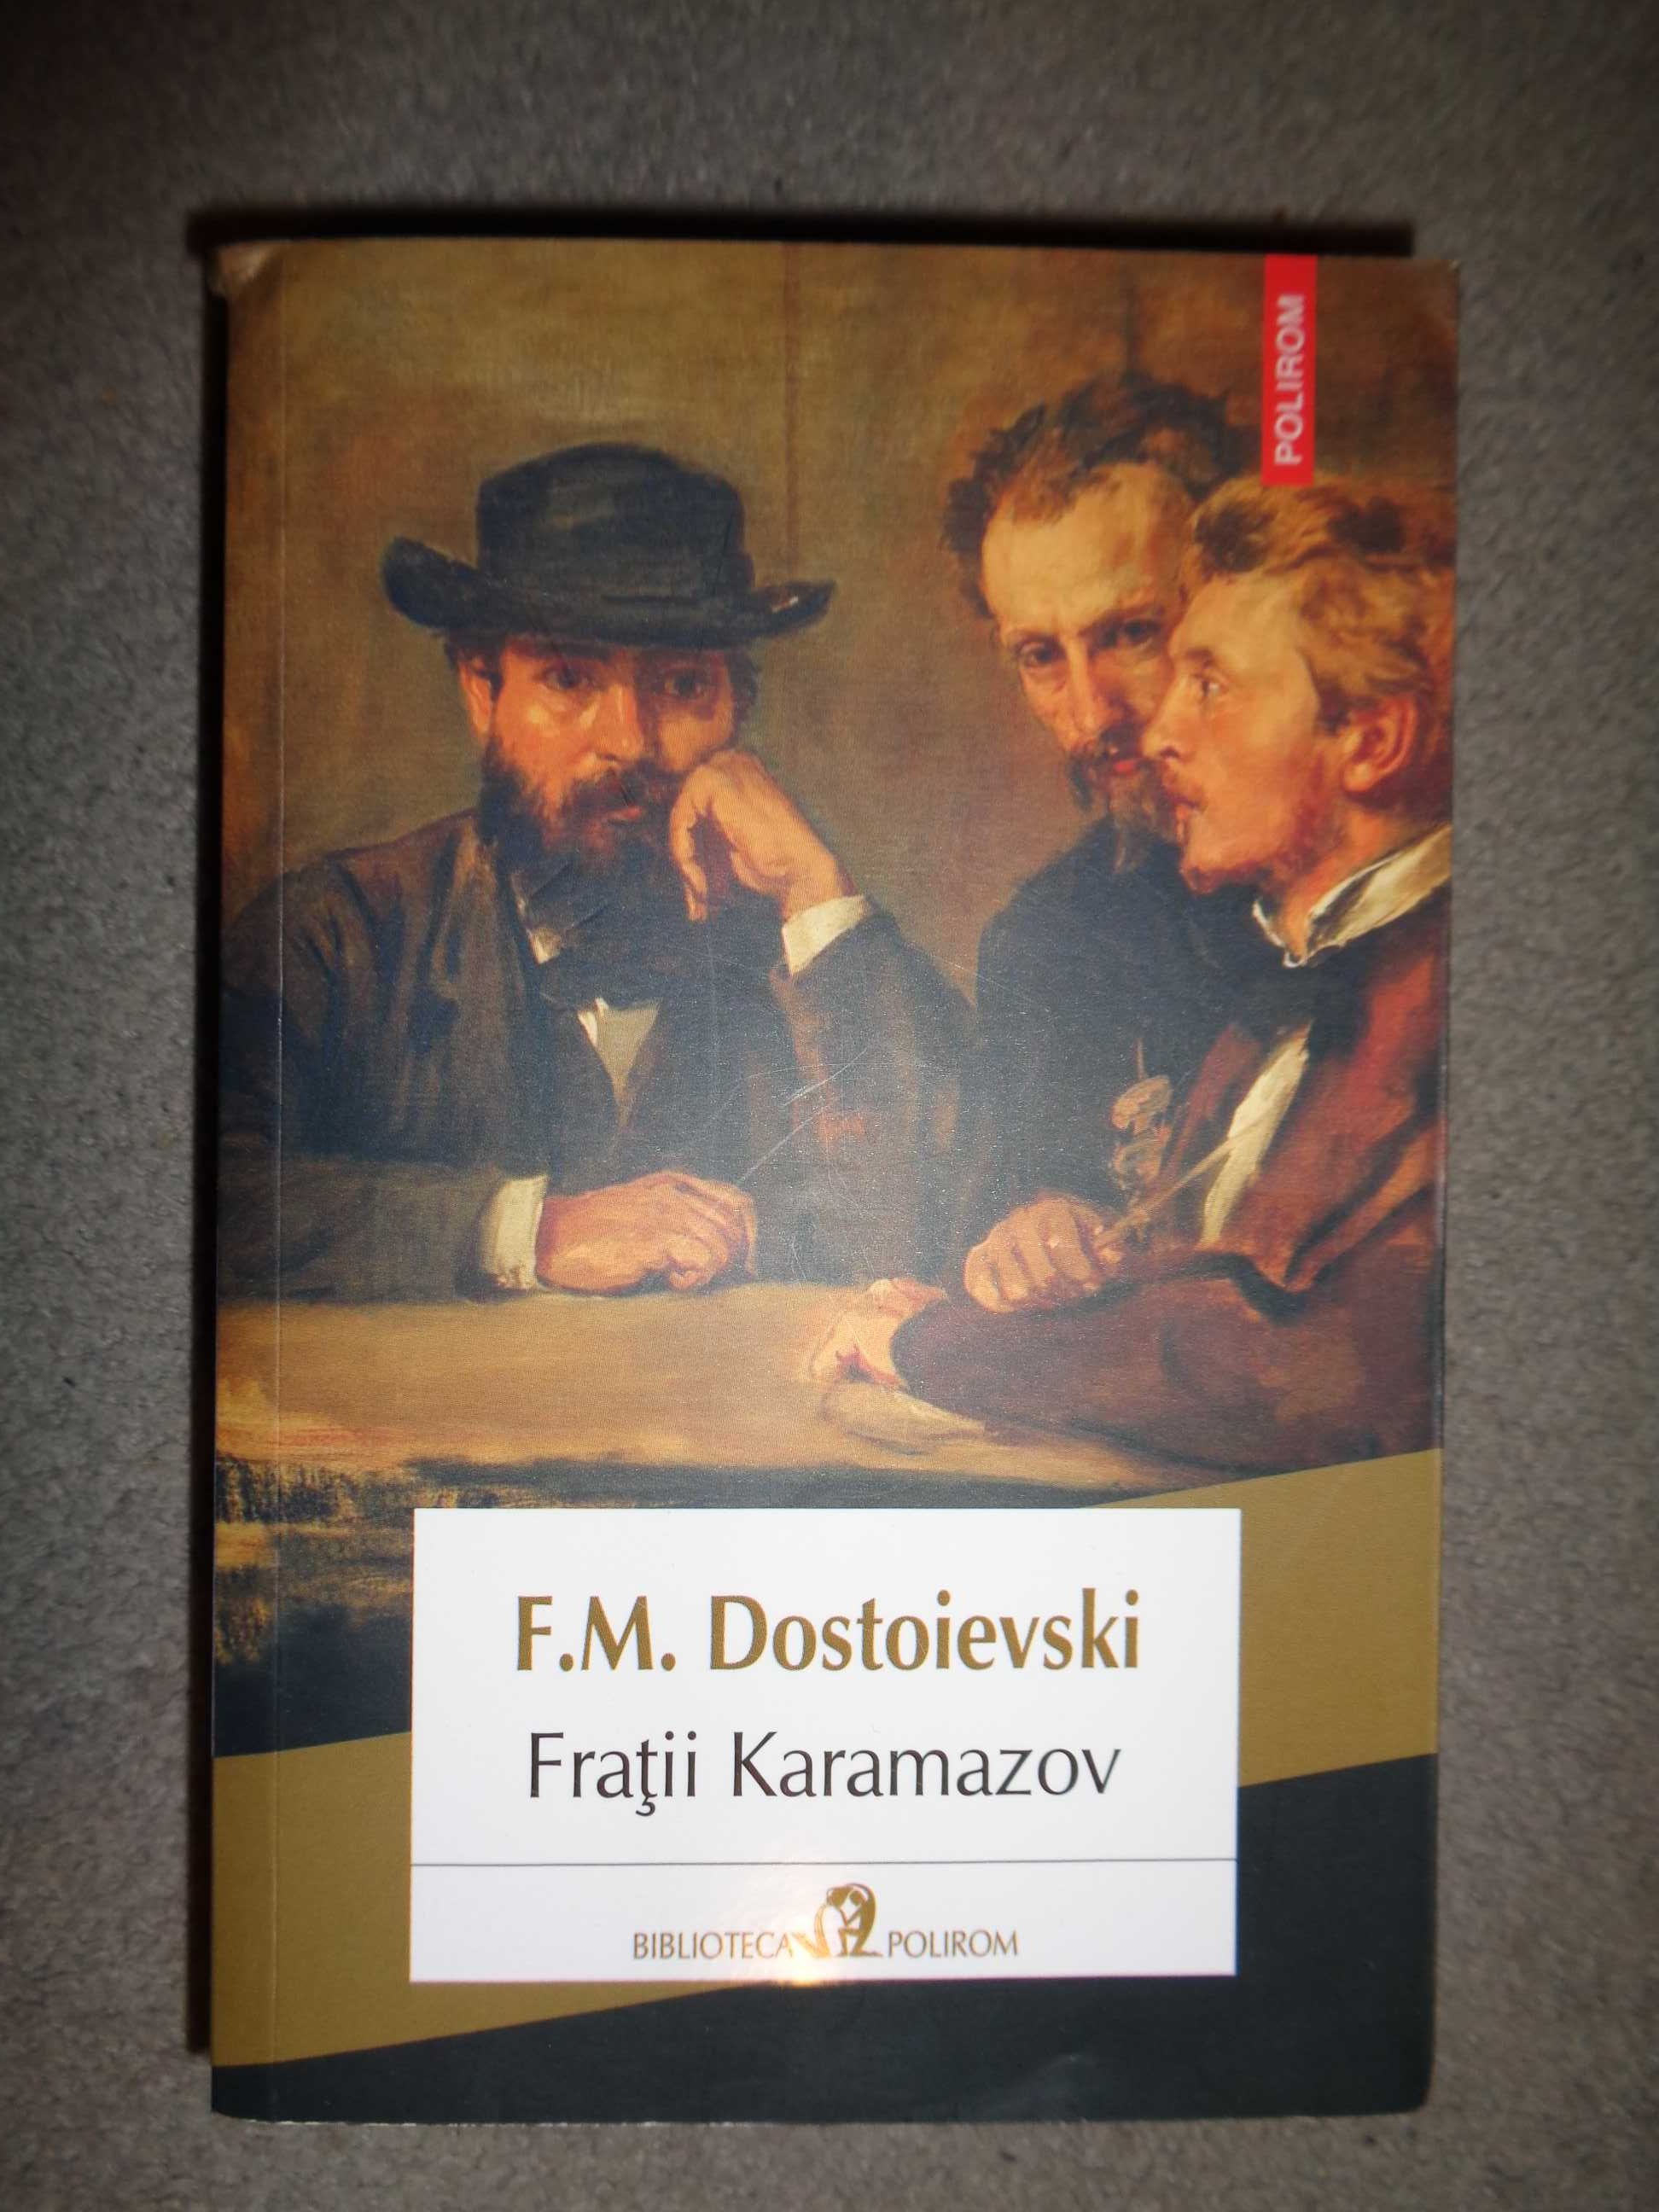 Fratii Karamazov - Dostoievski